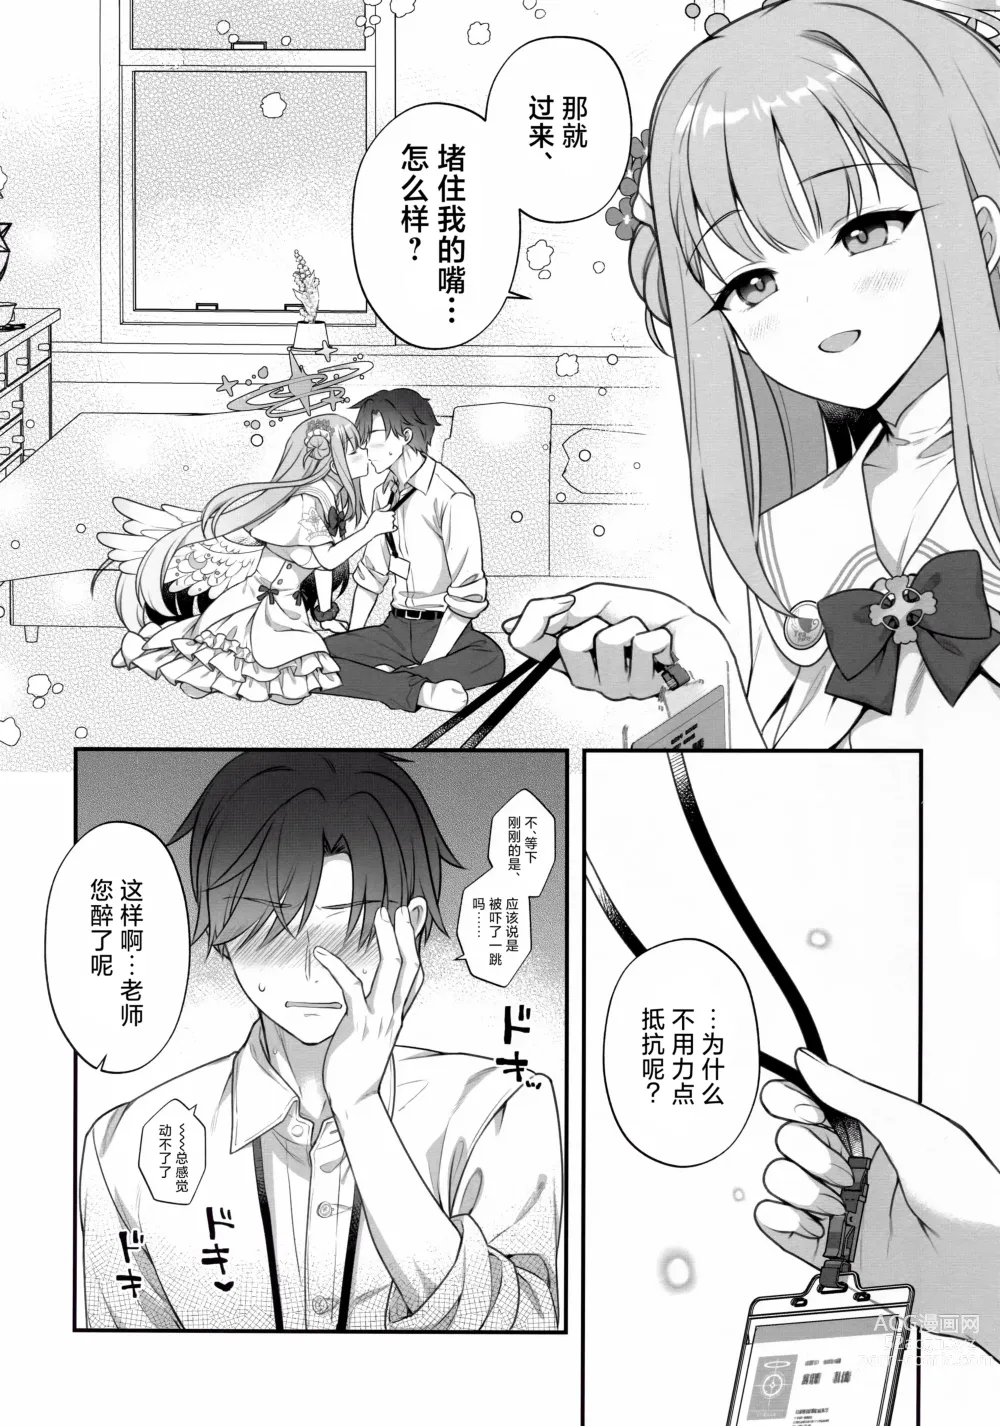 Page 5 of doujinshi 未花与秘密的茶会时间